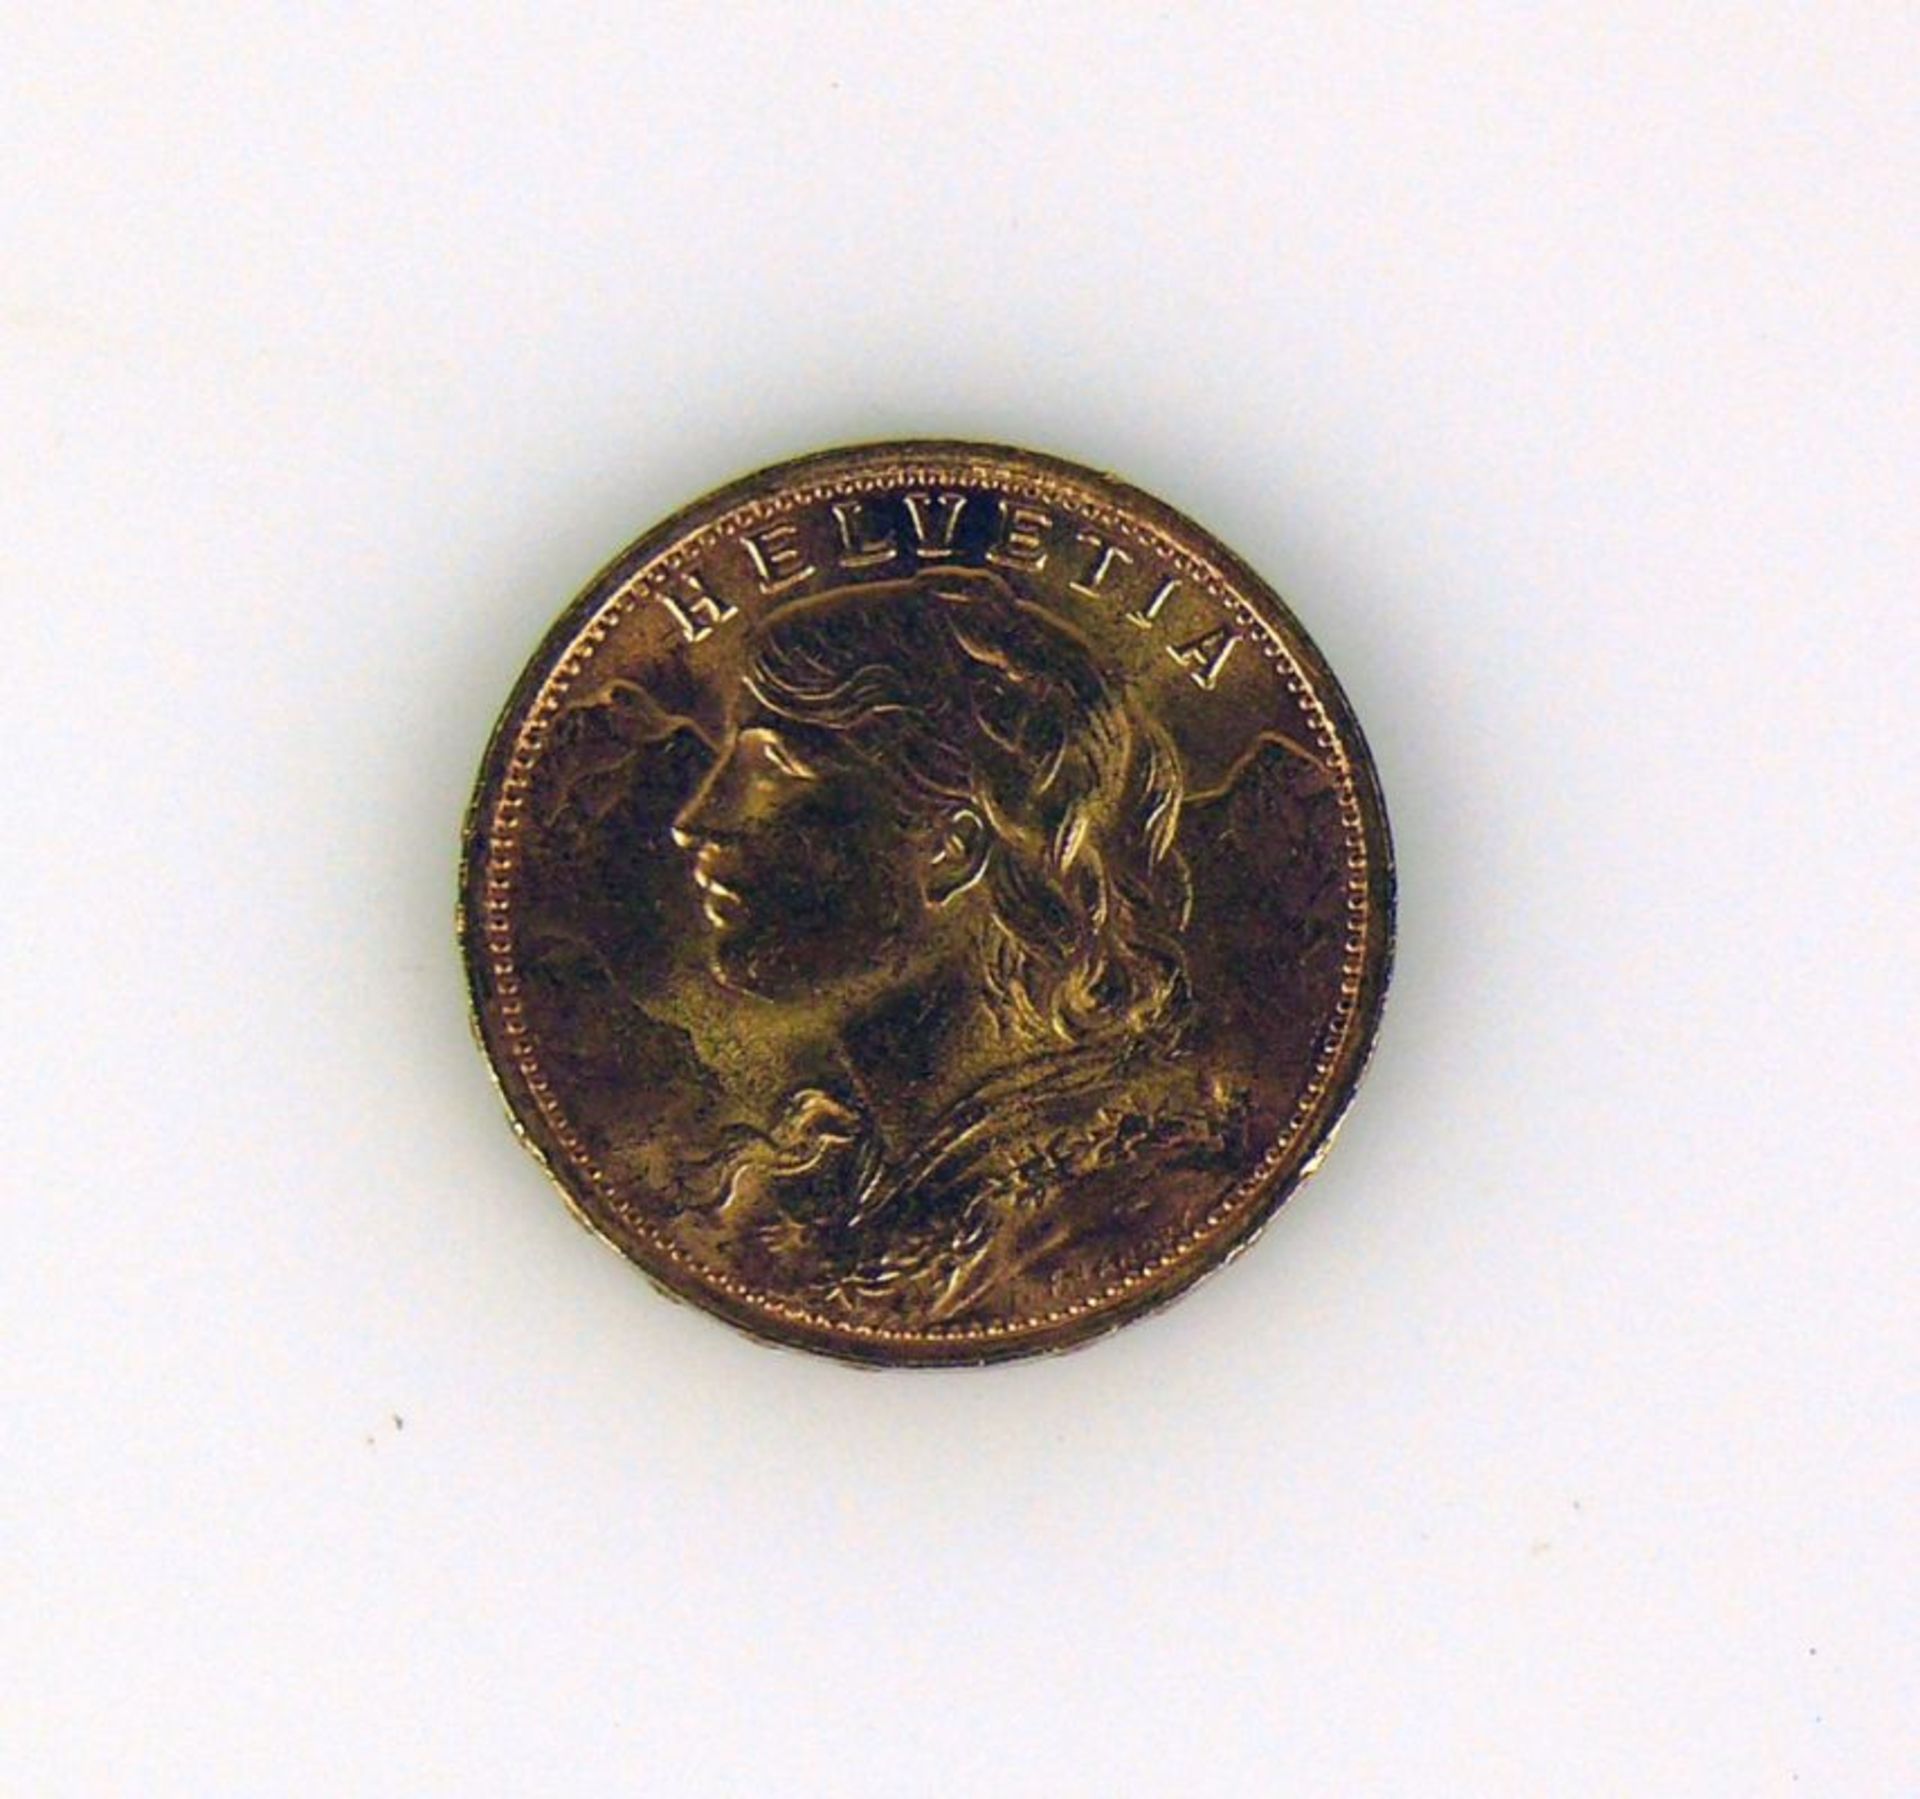 Goldmünze20 FRANKEN; Schweiz, 1947; 6,44g - Bild 2 aus 2